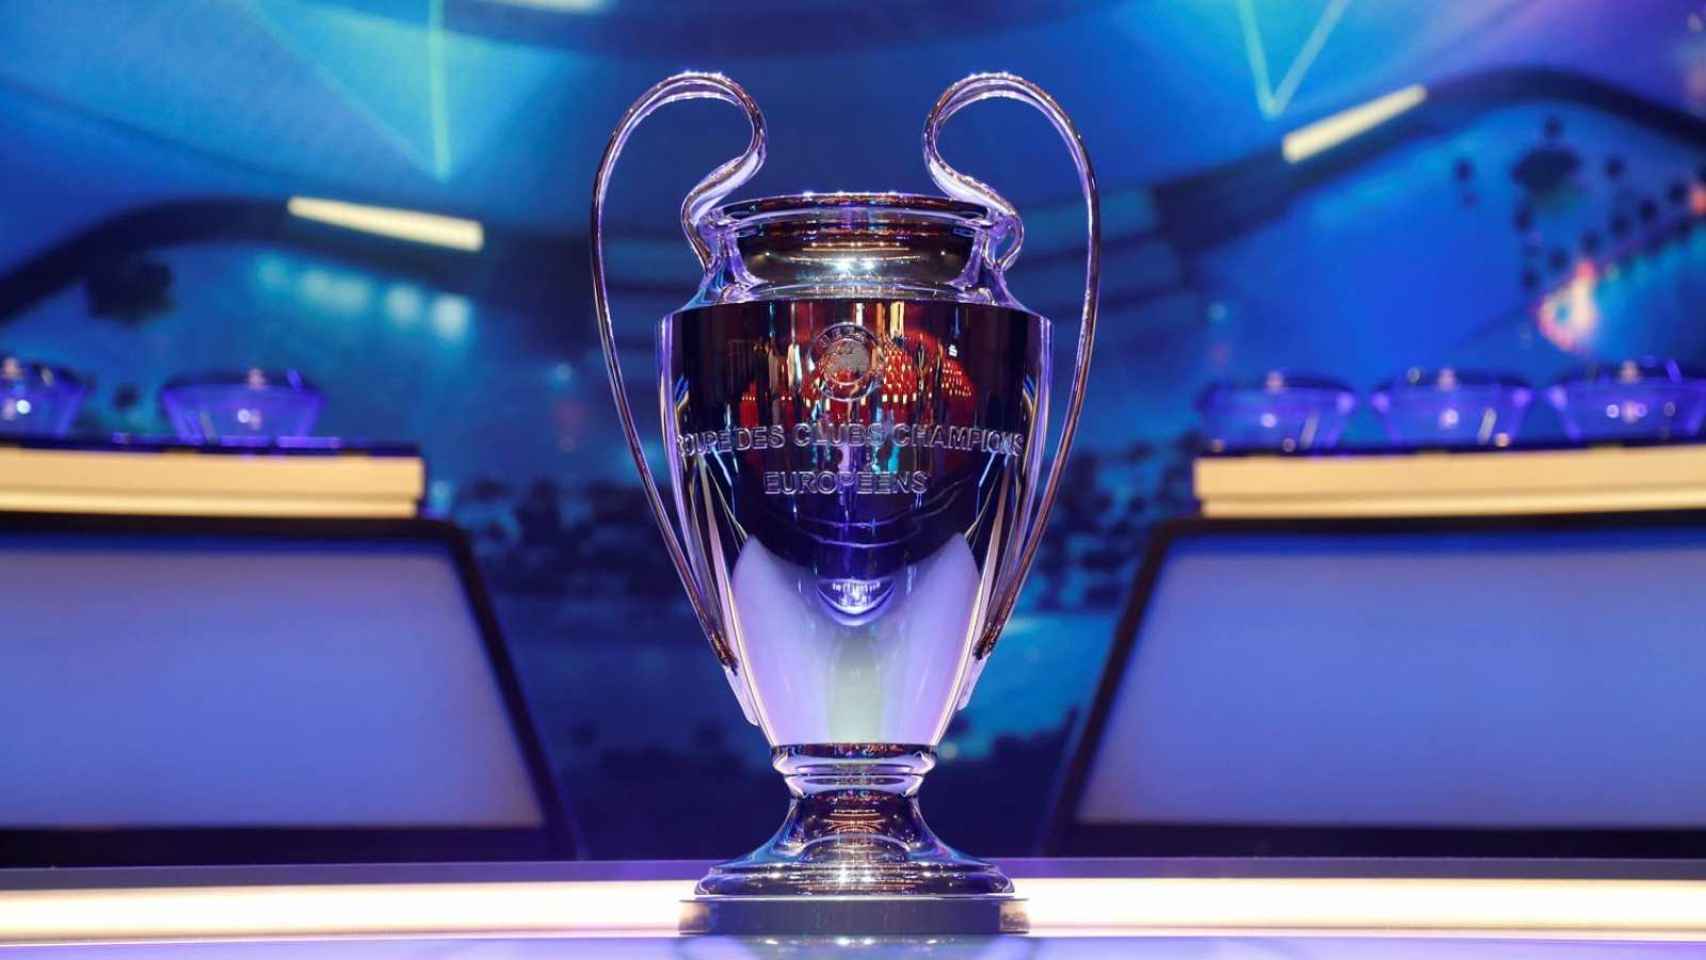 Champions League Final 2021 adidas dévoile le ballon officiel de l